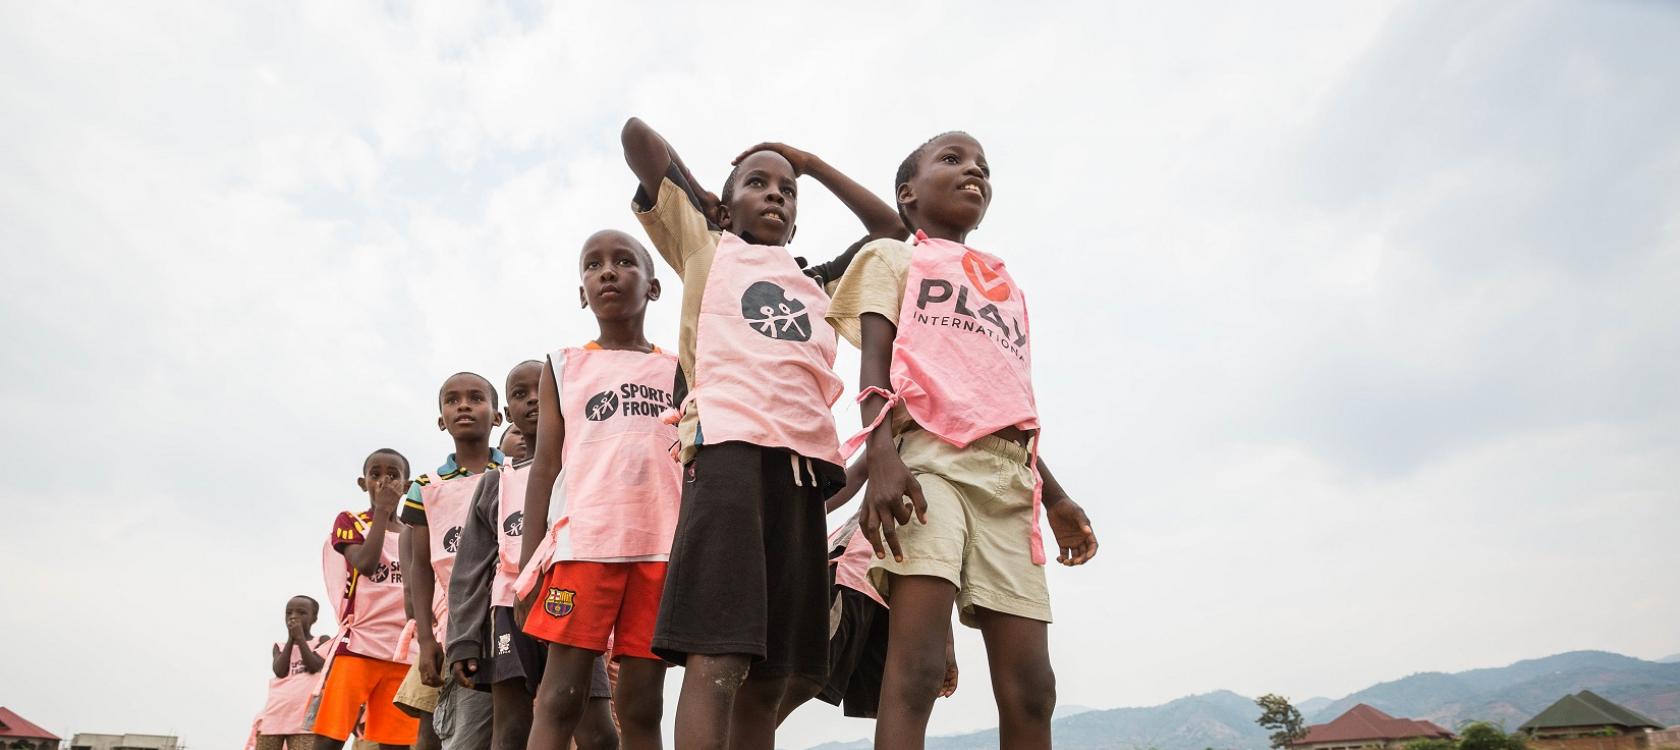 Bibliothèques sans frontières et Play International, 2 ONG engagées auprès des jeunes au Burundi